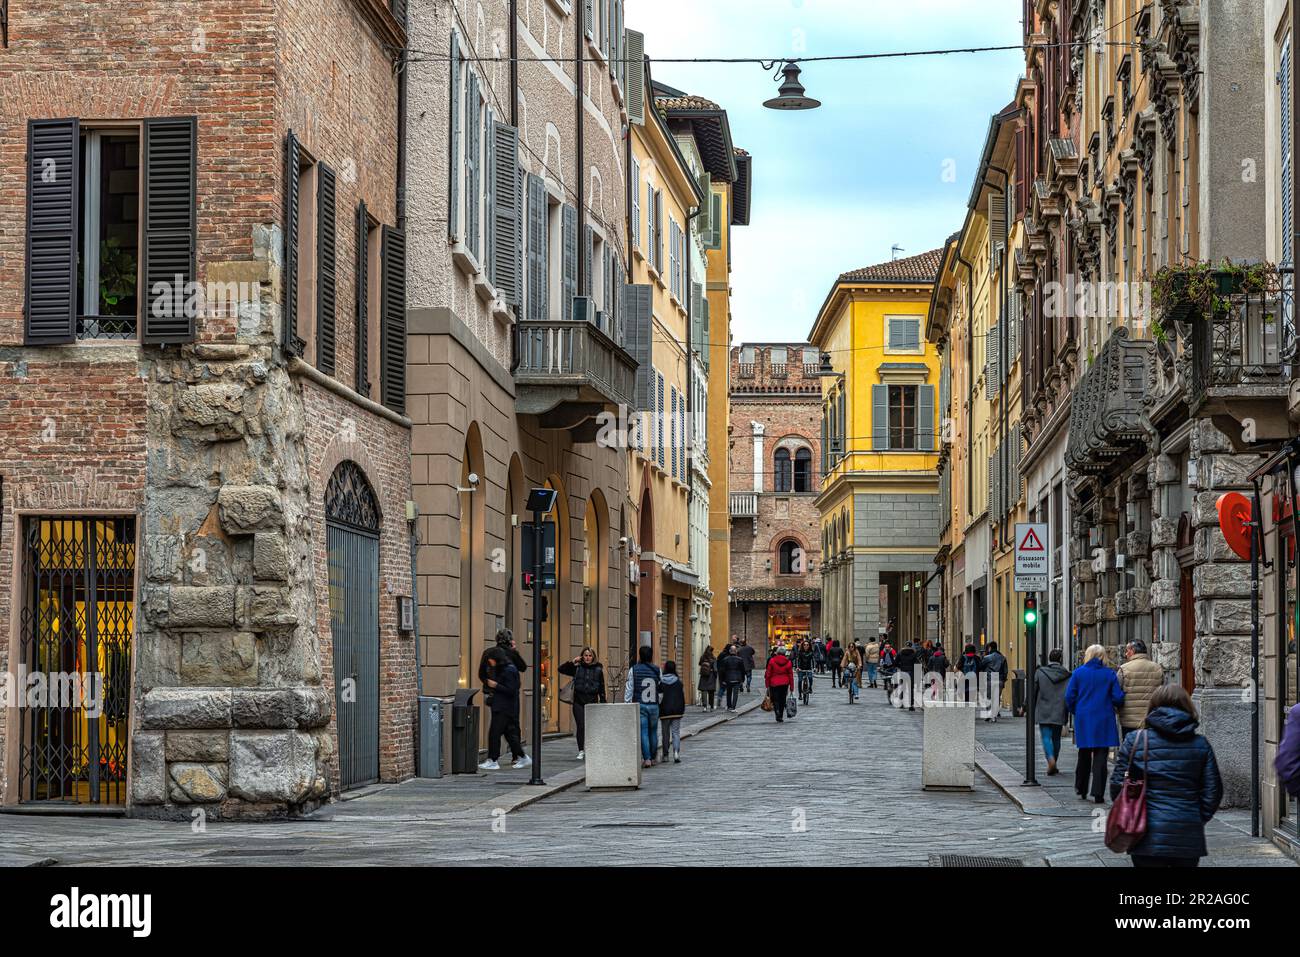 Scorcio della Via Emilia che attraversa la città tra palazzi medievali e negozi. Reggio Emilia, Emilia Romagna, Italia, Europa Foto Stock